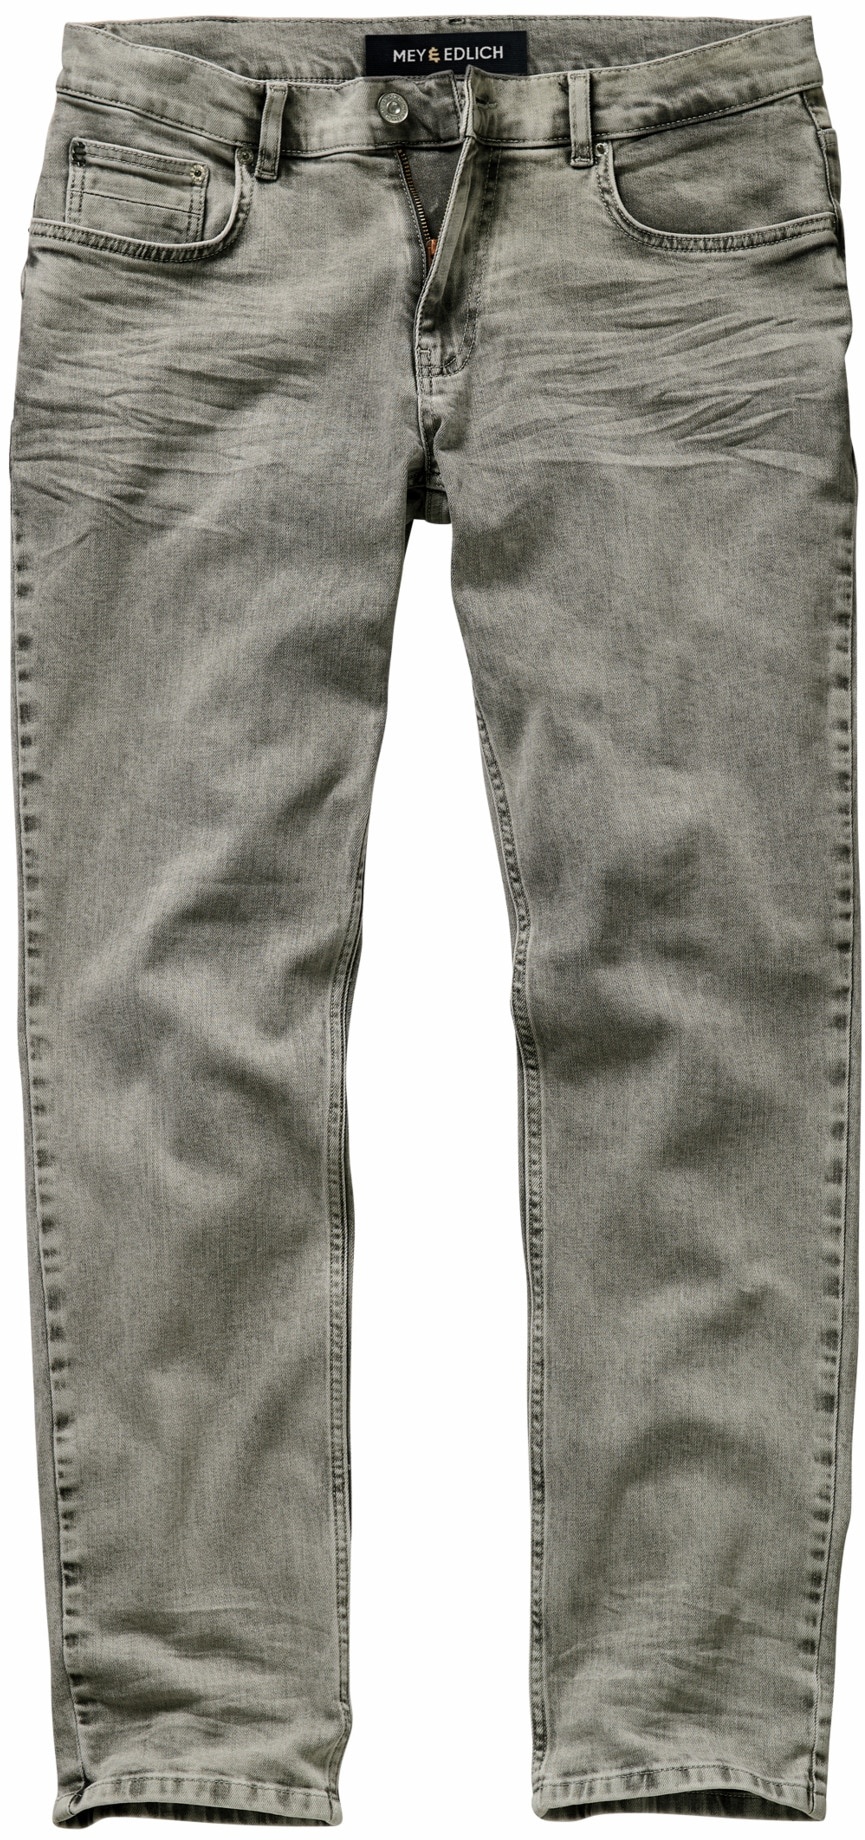 Mey & Edlich Herren Comeback-Jeans leicht grau 32/34 - 32/34